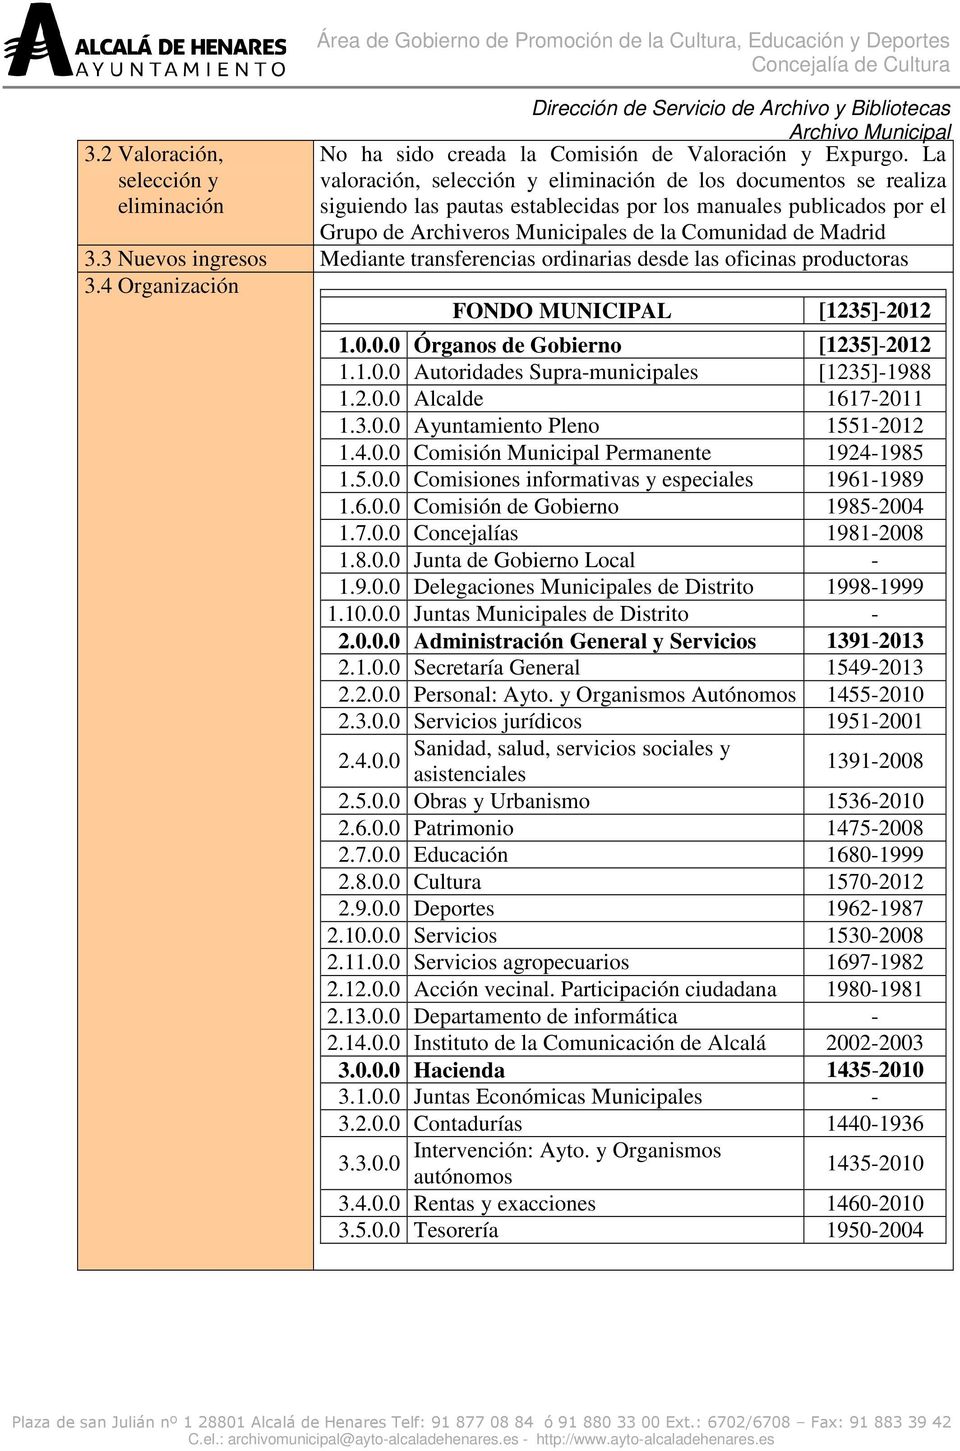 3 Nuevos ingresos Mediante transferencias ordinarias desde las oficinas productoras 3.4 Organización FONDO MUNICIPAL [1235]-2012 1.0.0.0 Órganos de Gobierno [1235]-2012 1.1.0.0 Autoridades Supra-municipales [1235]-1988 1.